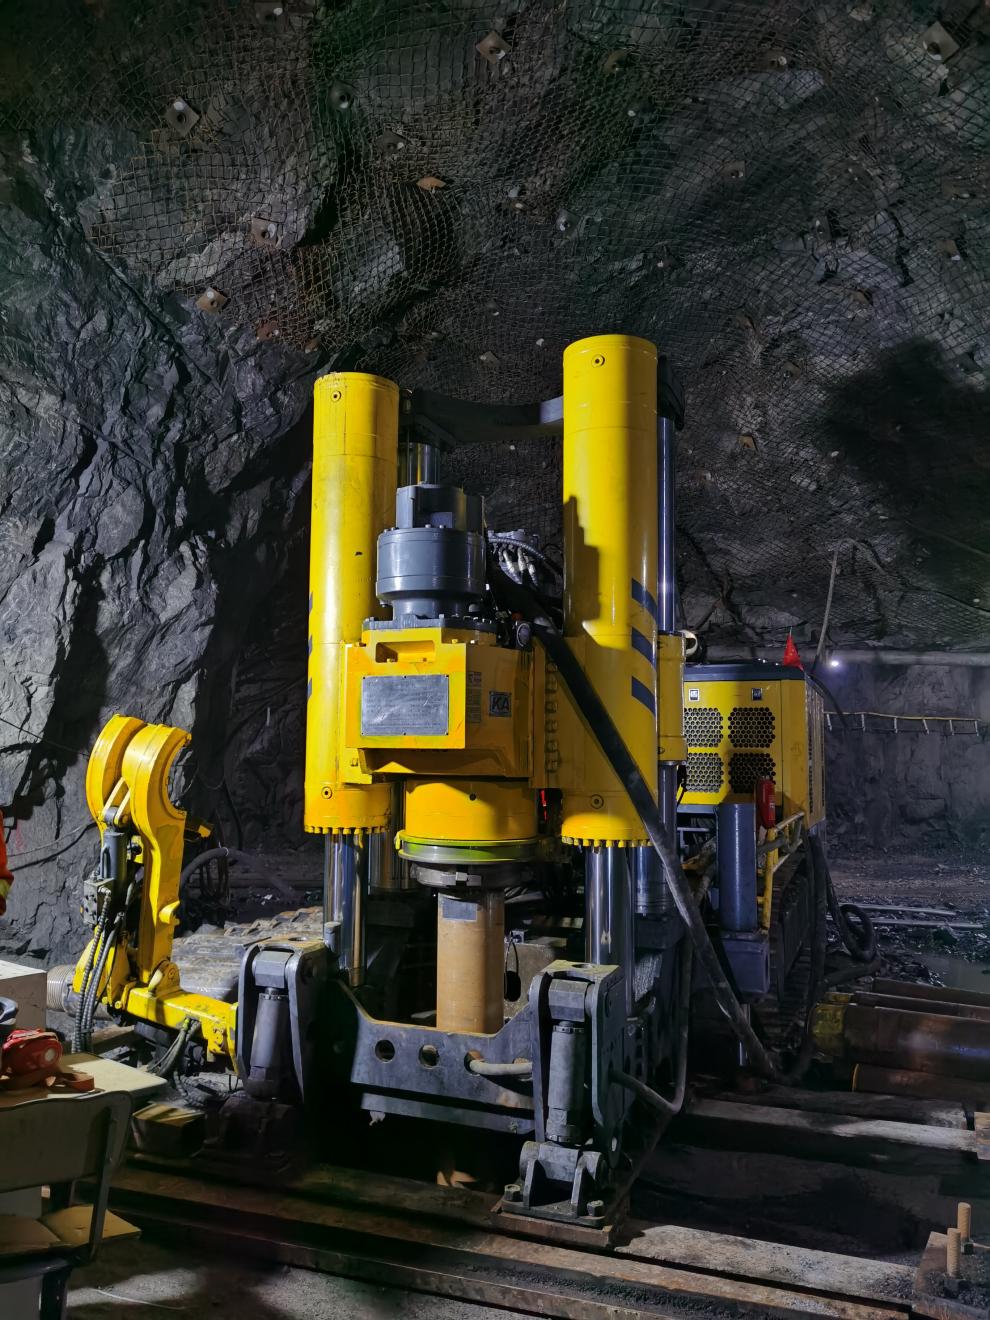 红岭矿业公司引进φ3m的反井钻机进行溜井施工,施工工期由115天减少至